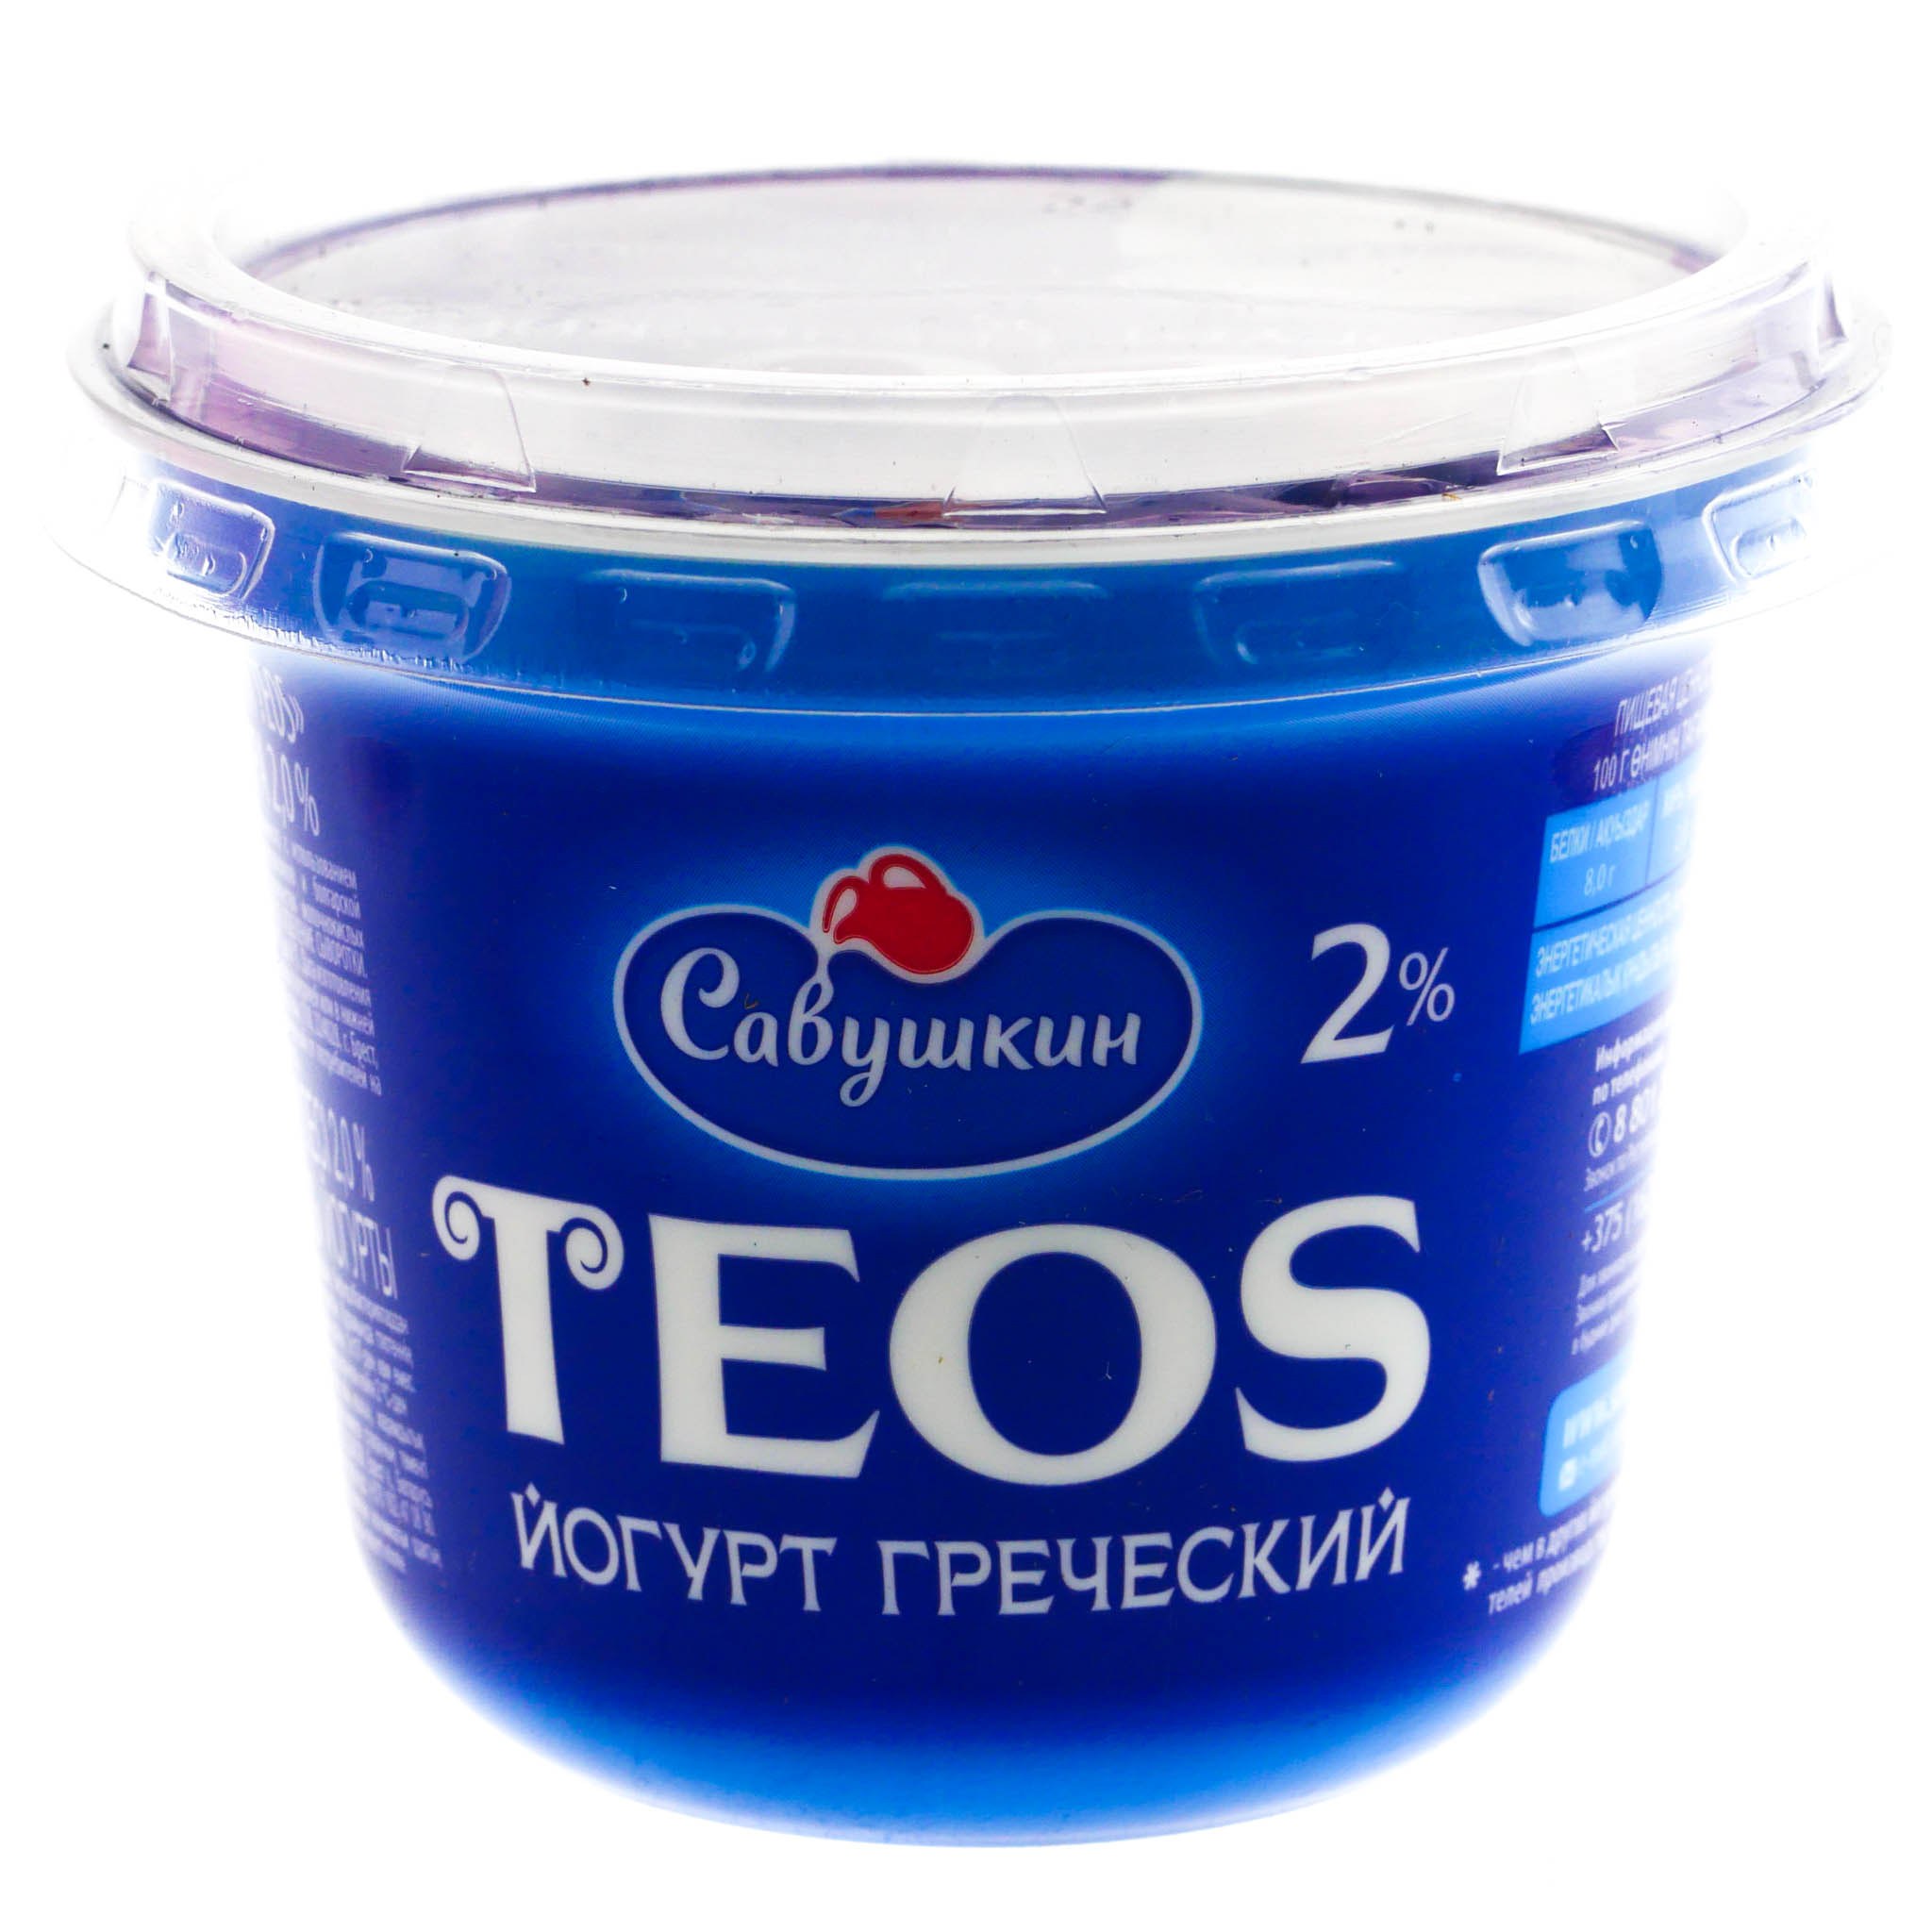 Теос питьевой. Йогурт греческий Teos 2% [Савушкин продукт]. Савушкин йогурт греческий Teos 2 250 г. Йогурт греческий "Савушкин" Teos натуральный 2 % 140 г. Йогурт греческий 2% Савушкин продукт 250г.